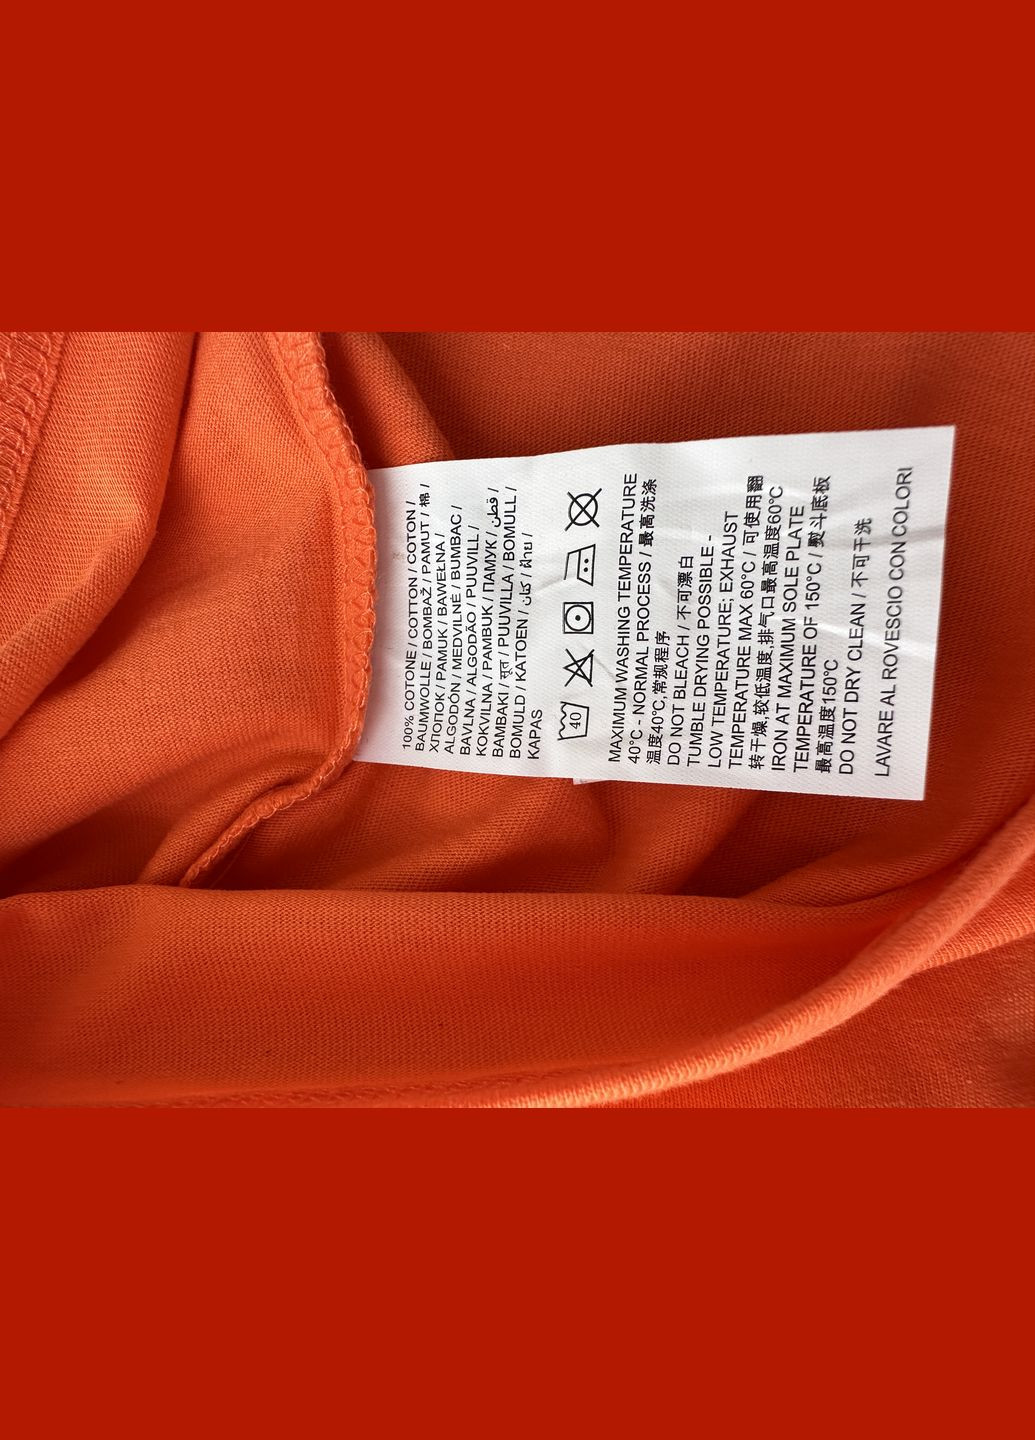 Оранжевая летняя футболка для парня оранжевая базовая 2000-21 (116 см) OVS